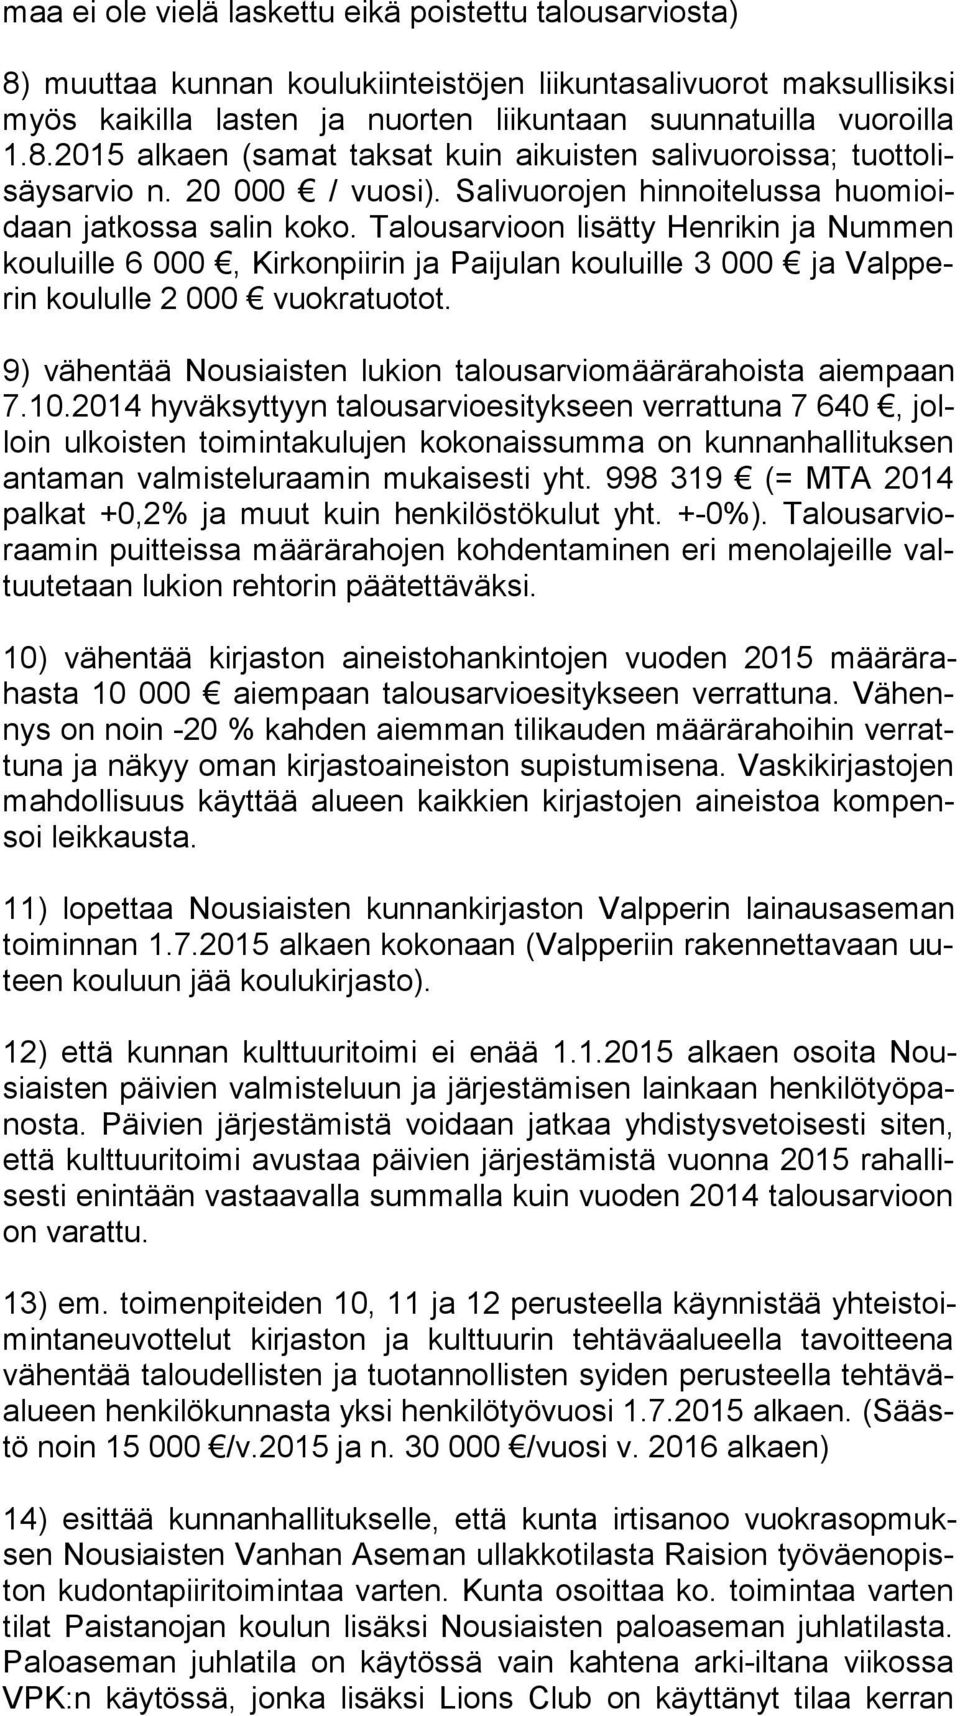 Talousarvioon lisätty Henrikin ja Nummen kou luil le 6 000, Kirkonpiirin ja Paijulan kouluille 3 000 ja Valp perin koululle 2 000 vuokratuotot.